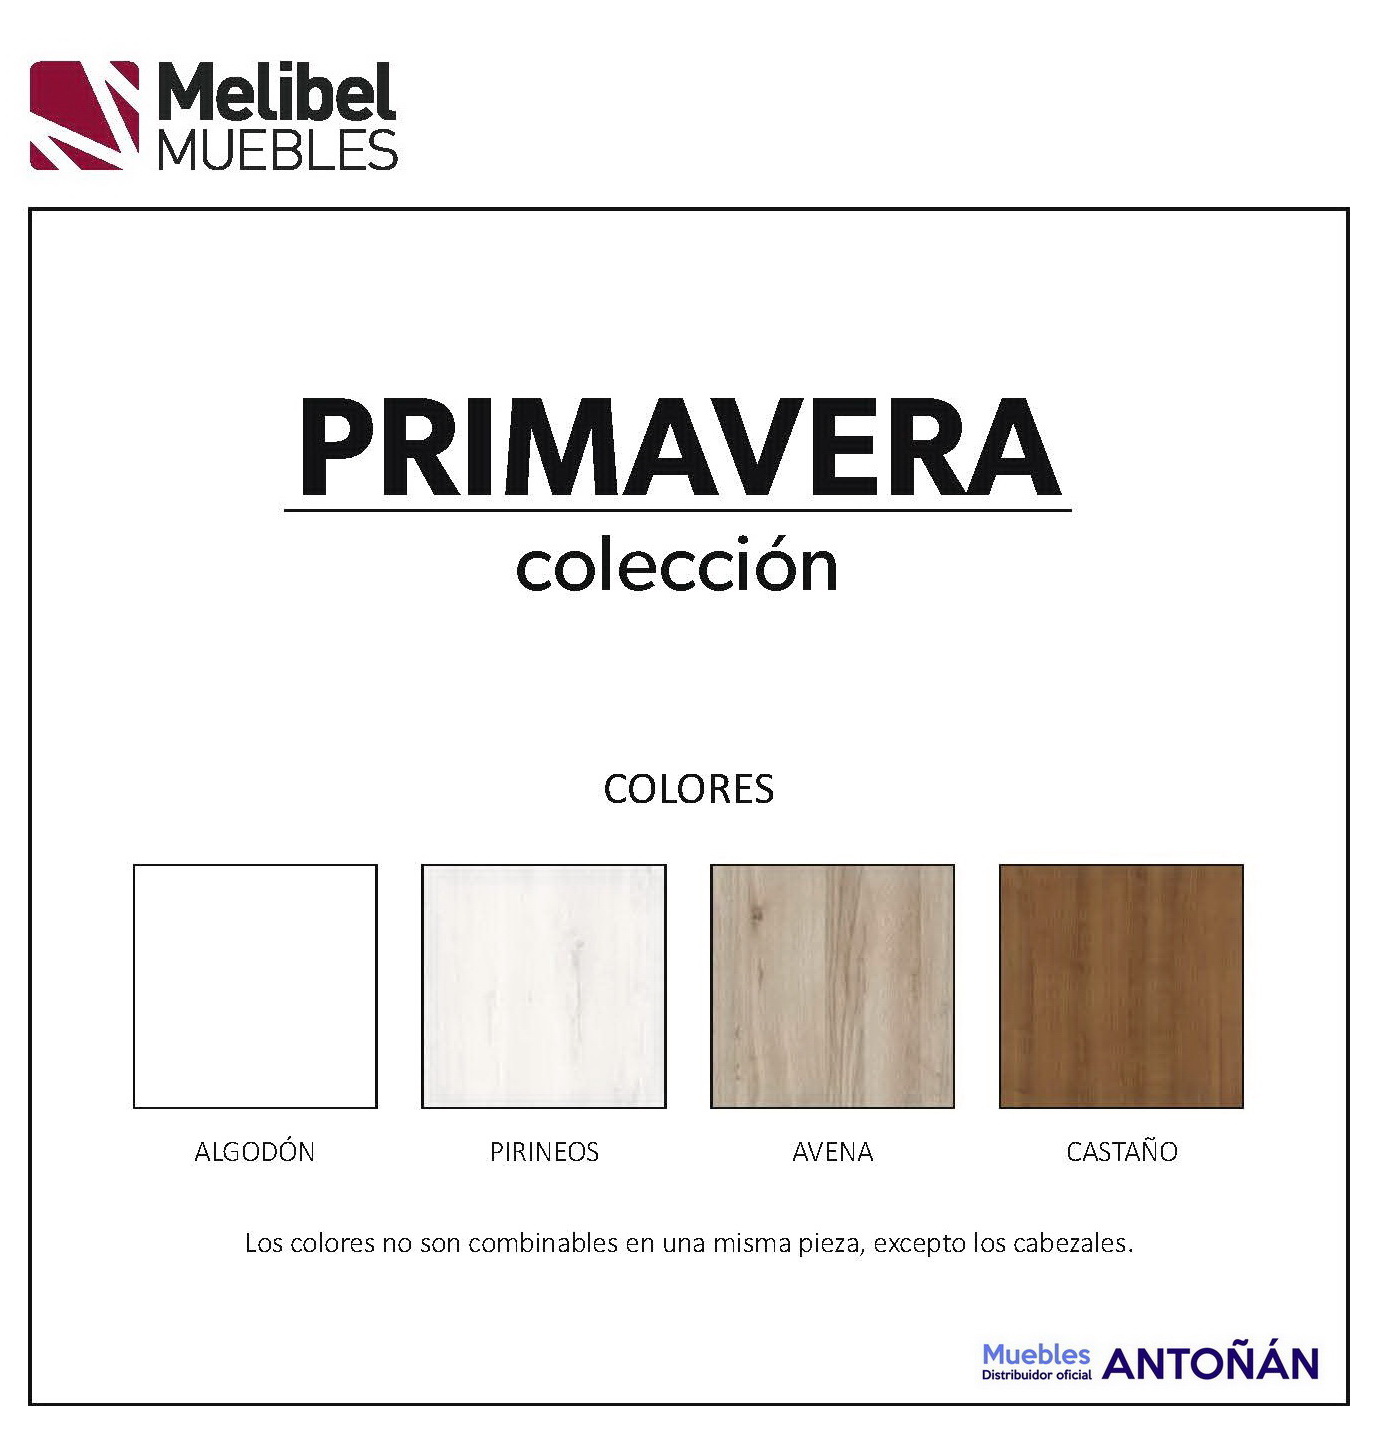 colores PRIMAVERA dormitorios Low Cost by Melibel en muebles antoñán® León